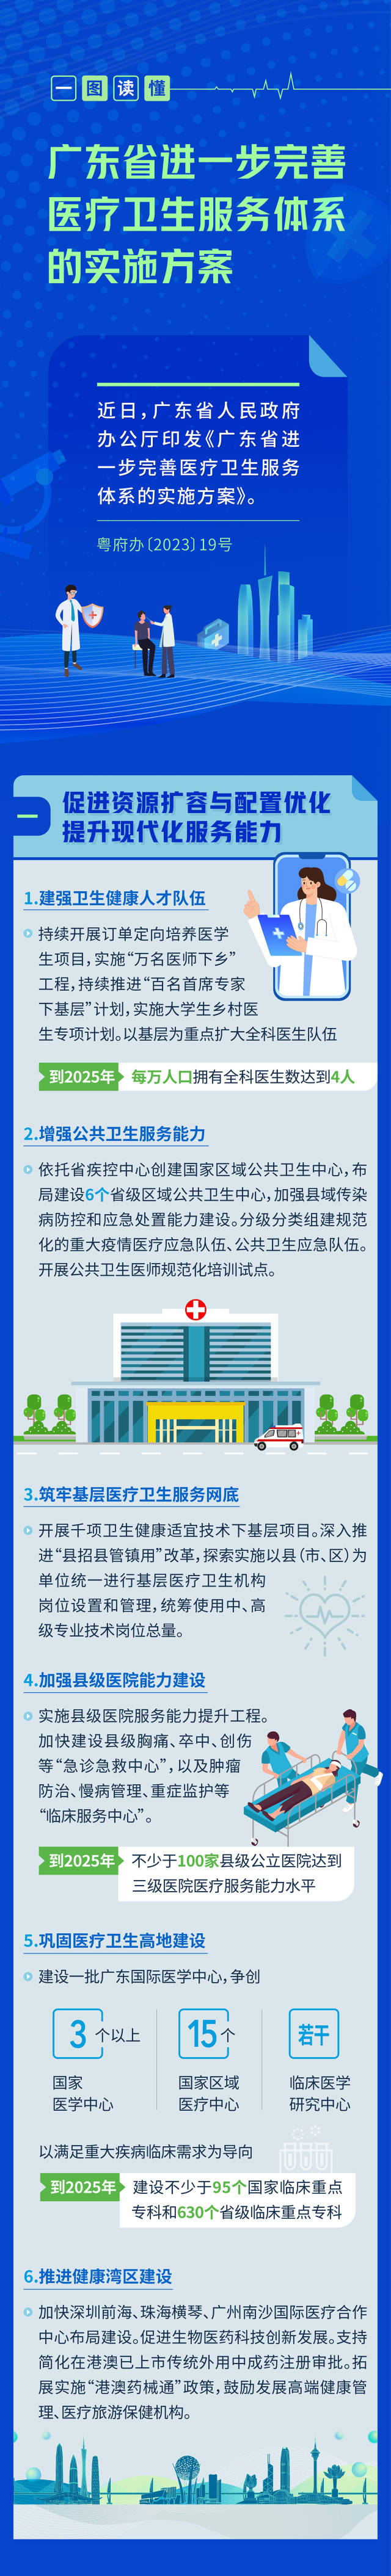 广东出台27条措施完善医疗卫生服务体系